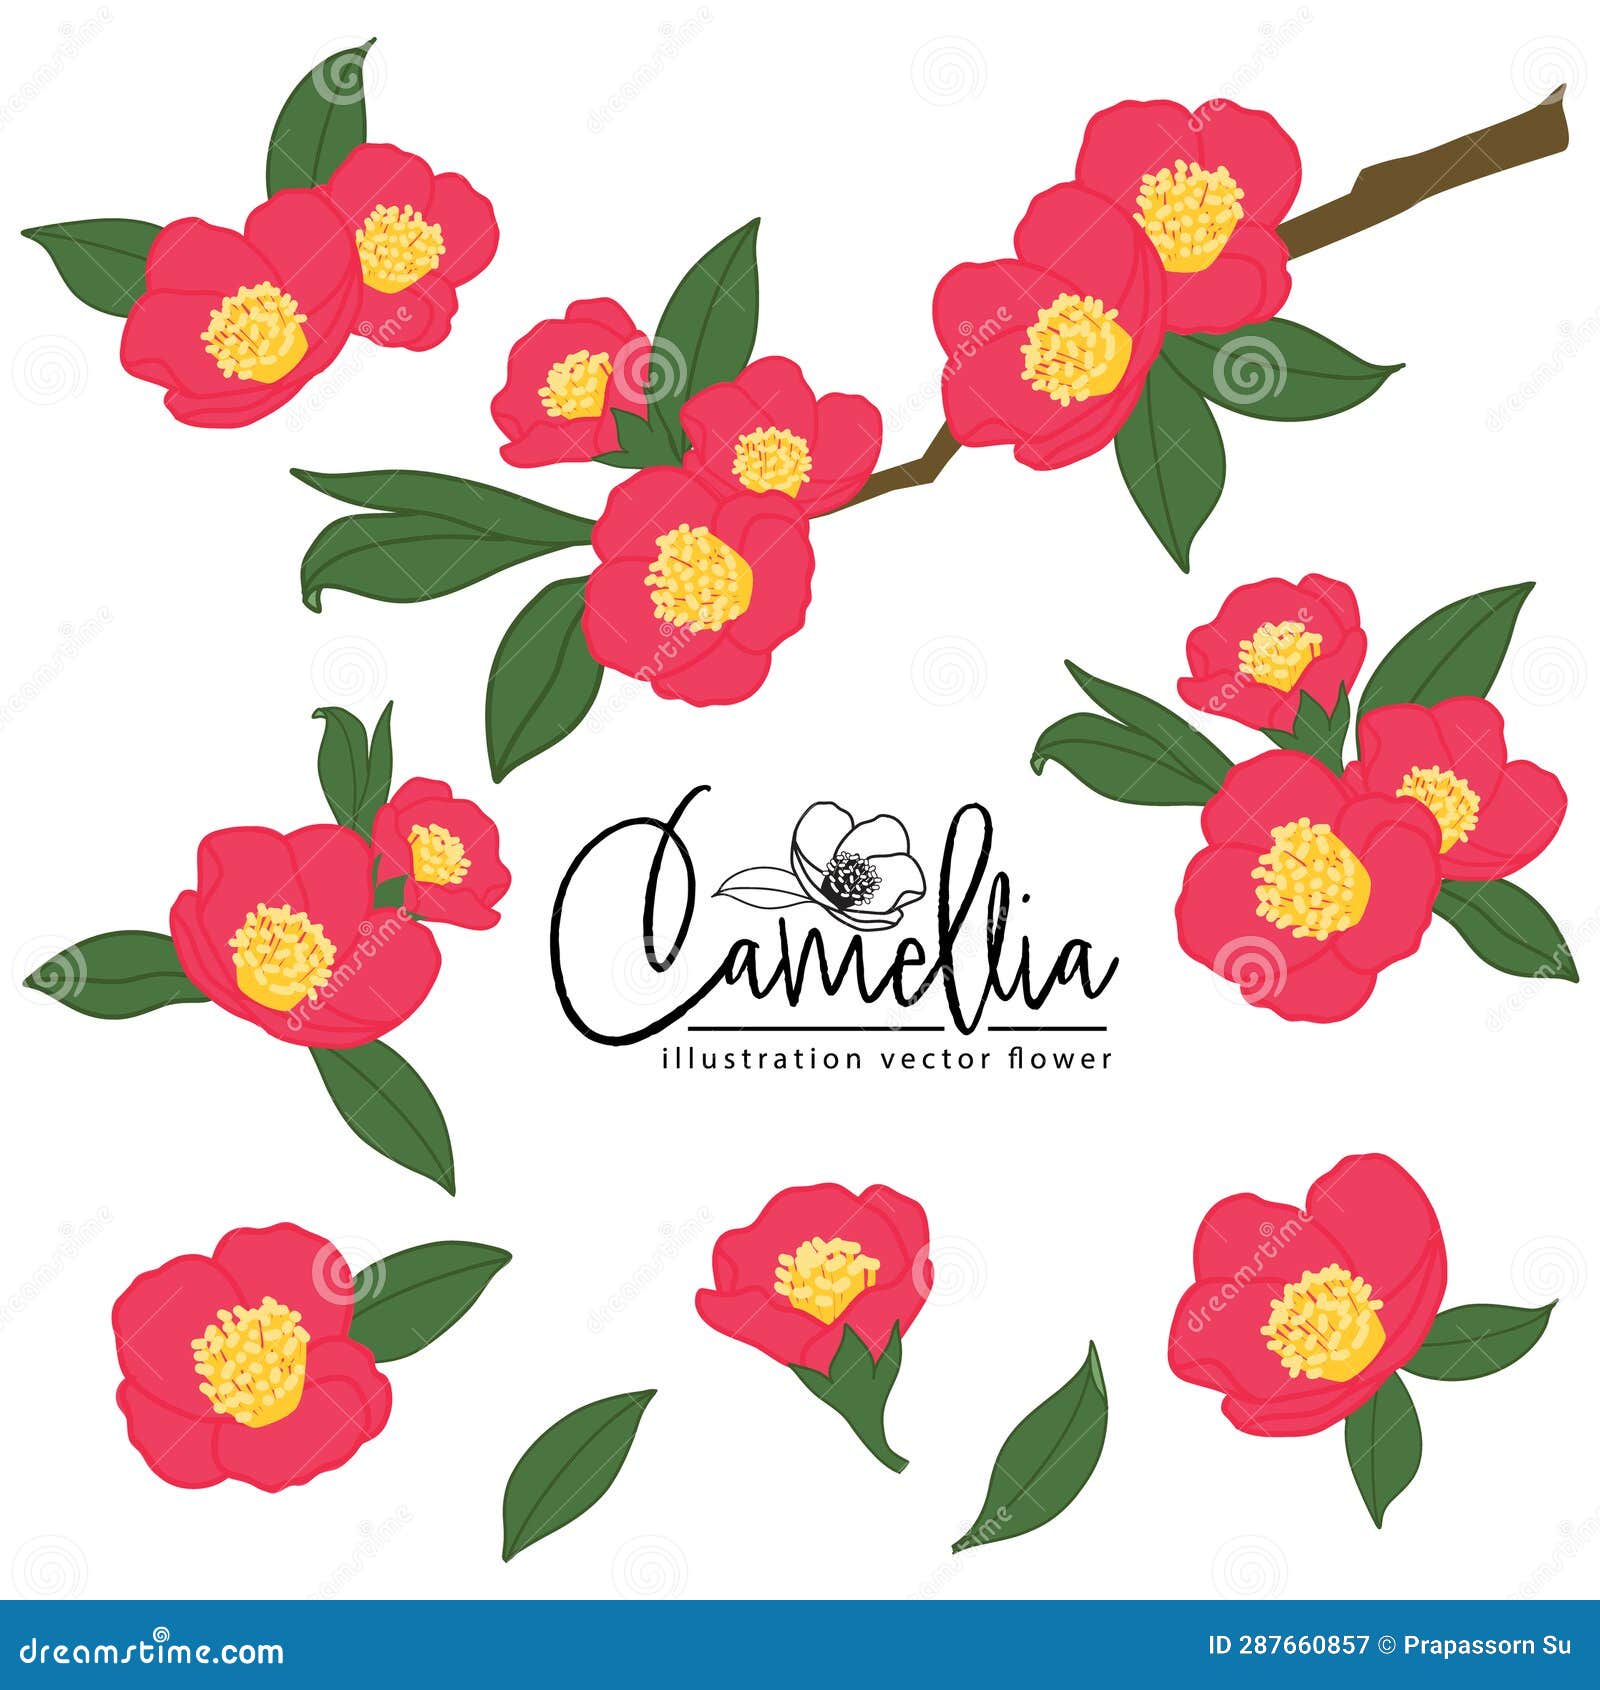 camellia red flower illlustration   set